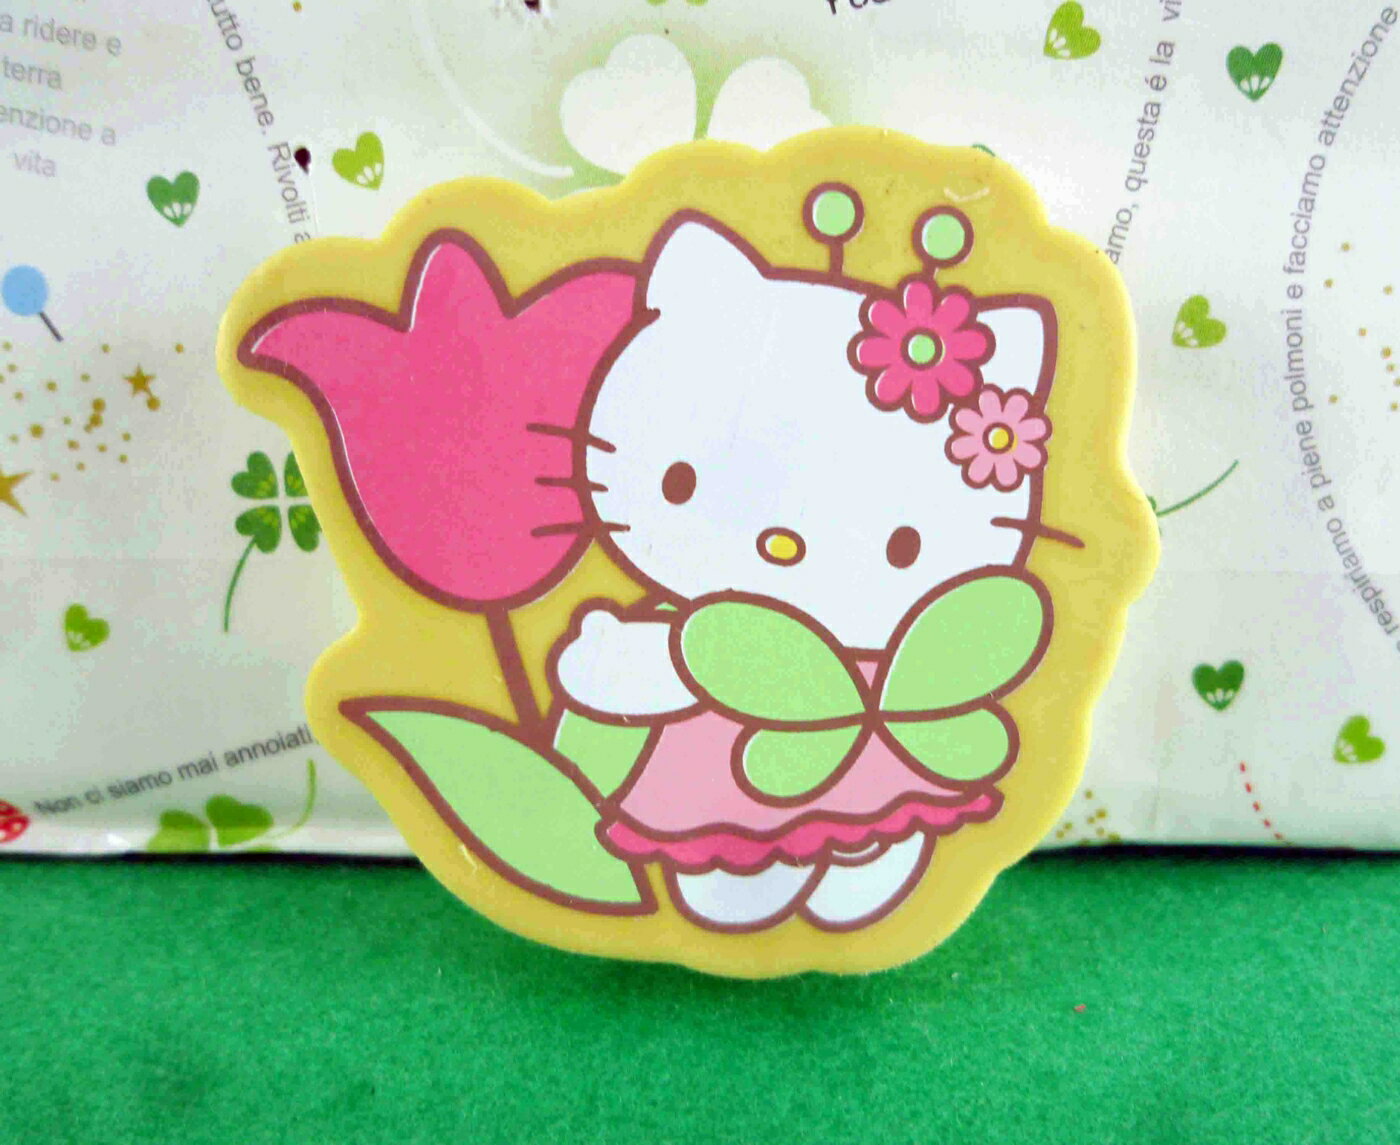 【震撼精品百貨】Hello Kitty 凱蒂貓 造型橡皮擦-黃鬱金香 震撼日式精品百貨